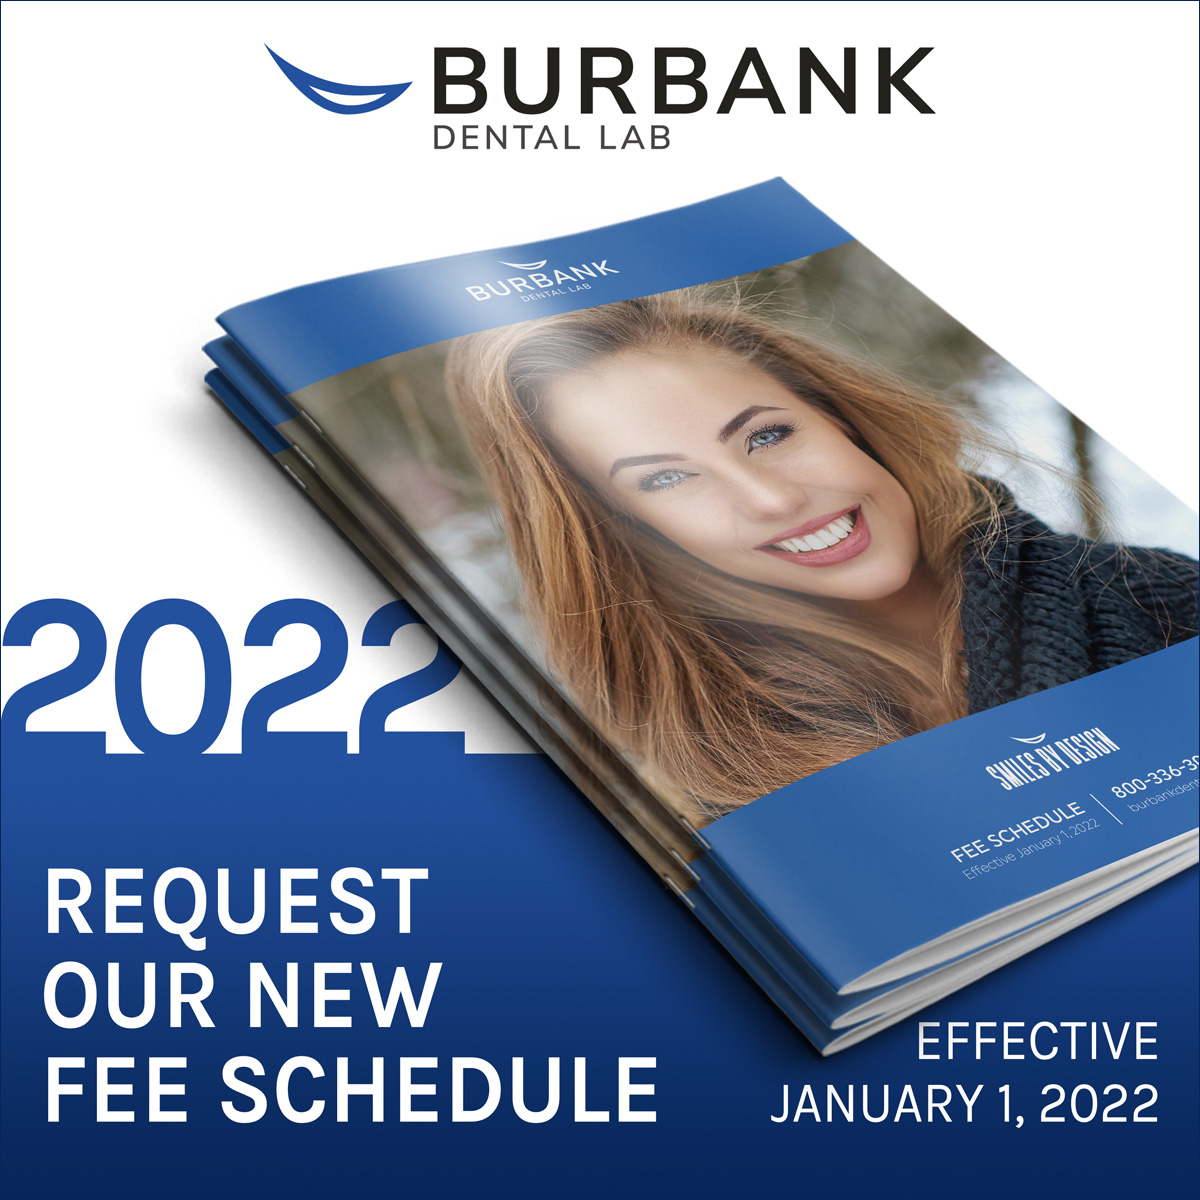 Burbank Dental Lab Fee Schedule 2022